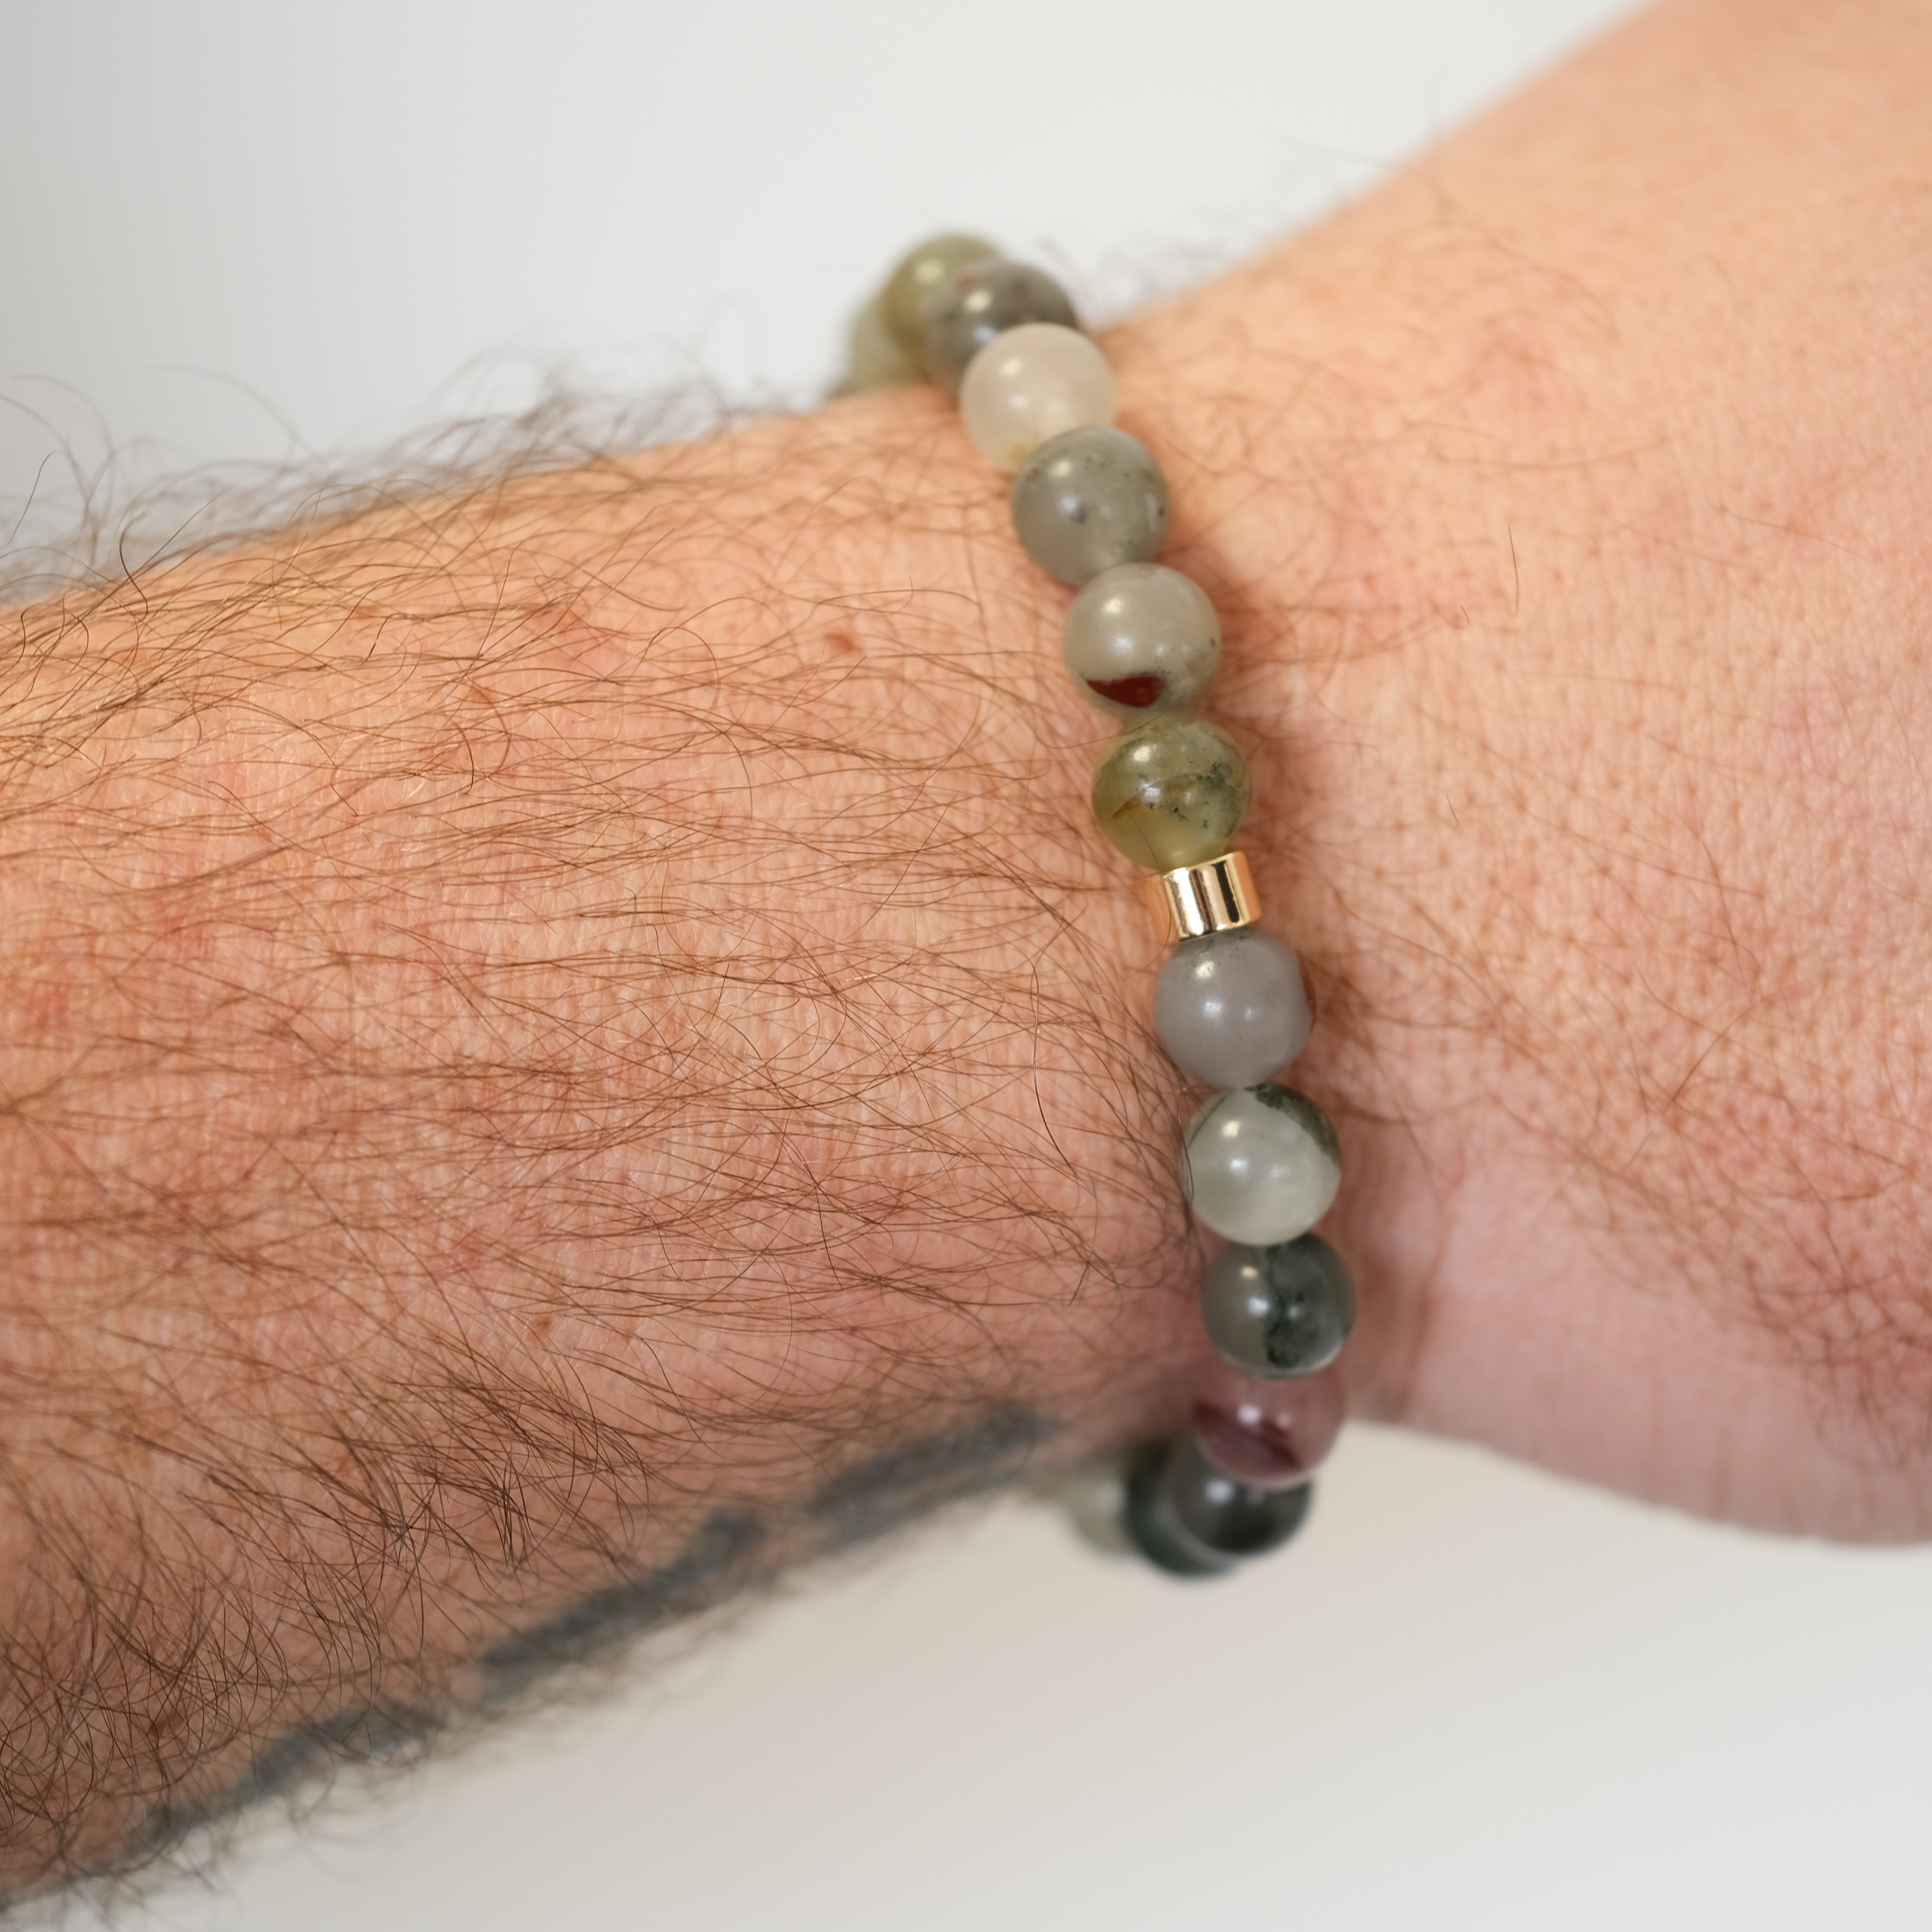 A bloodstone gemstone bracelet worn on a model's wrist